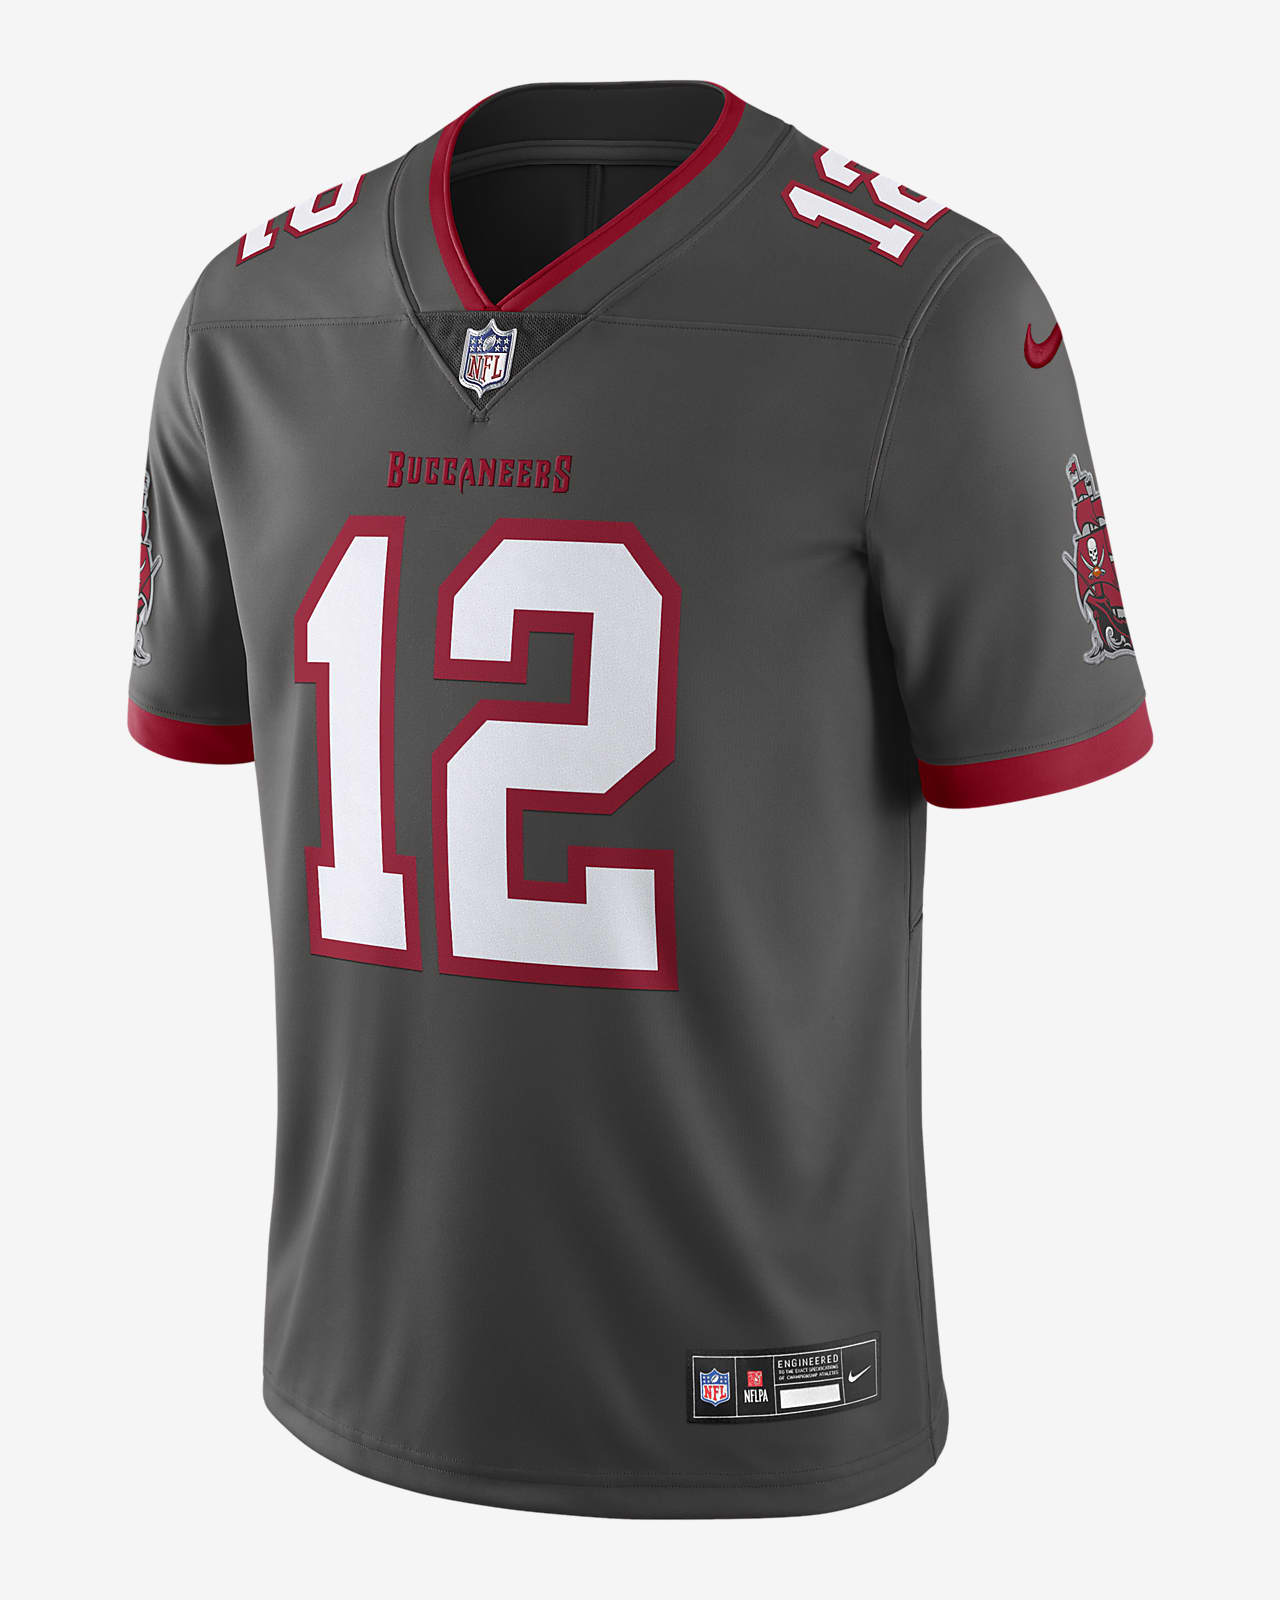 Jersey de fútbol americano Nike Dri-FIT de la NFL Limited para hombre Tom Brady Tampa Bay Buccaneers